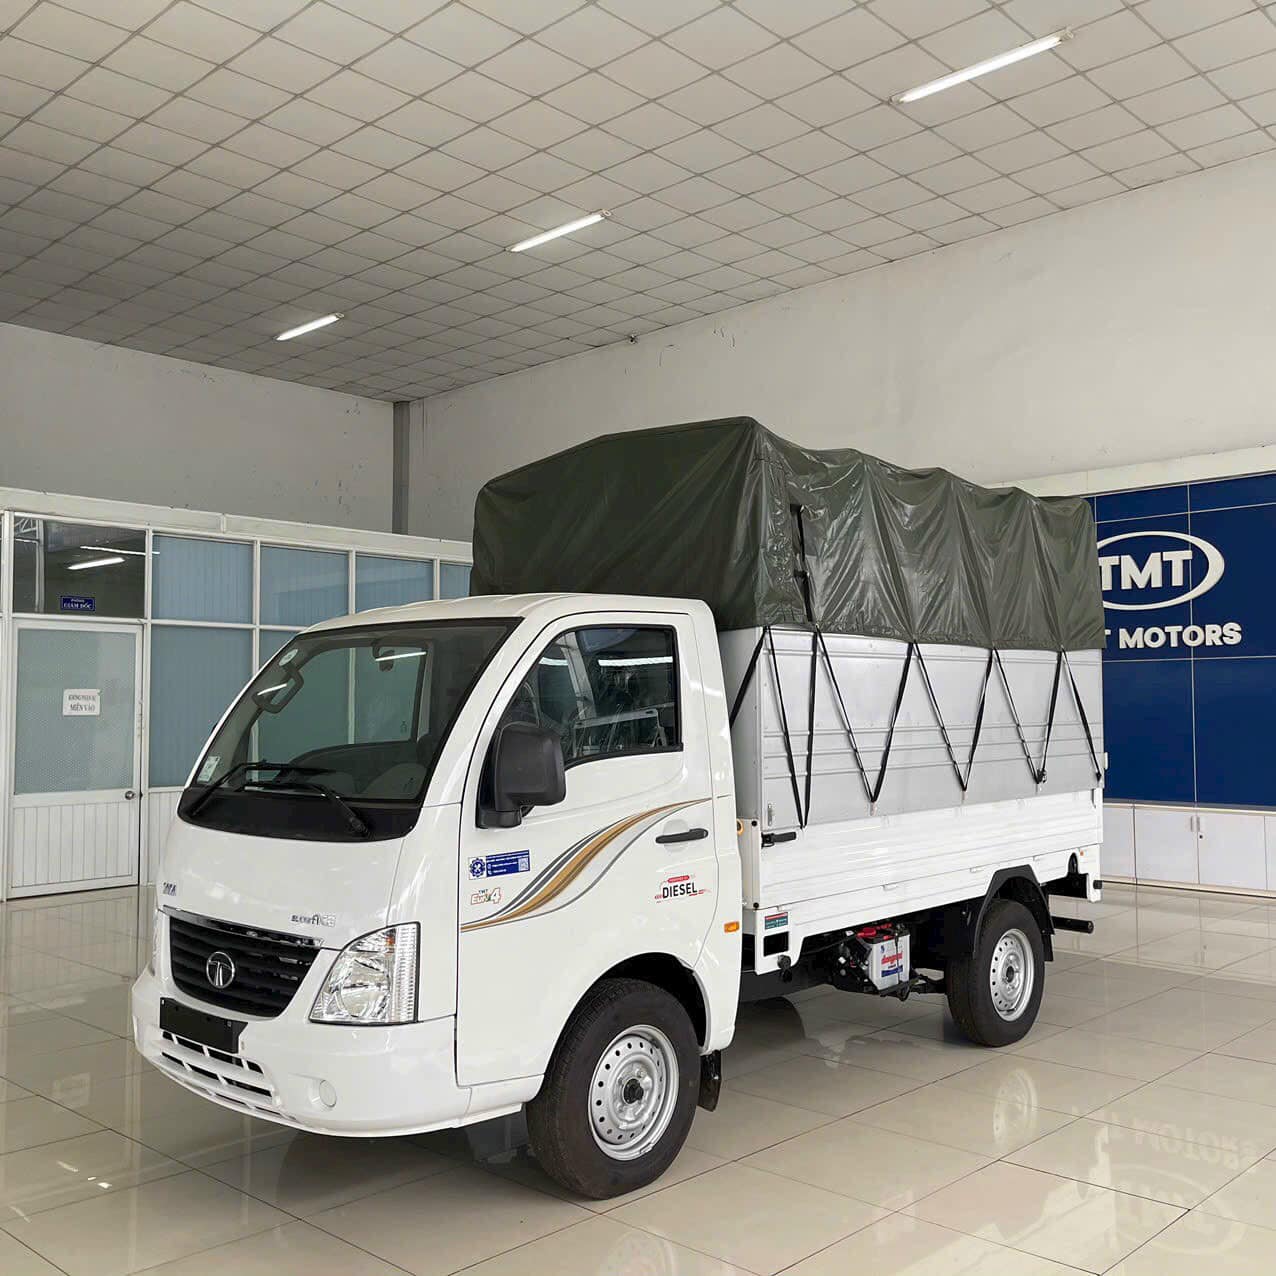 TƯ VẤN : Thay lốp xe tải Tata Super ACE ở Biên Hoà, Đồng Nai.